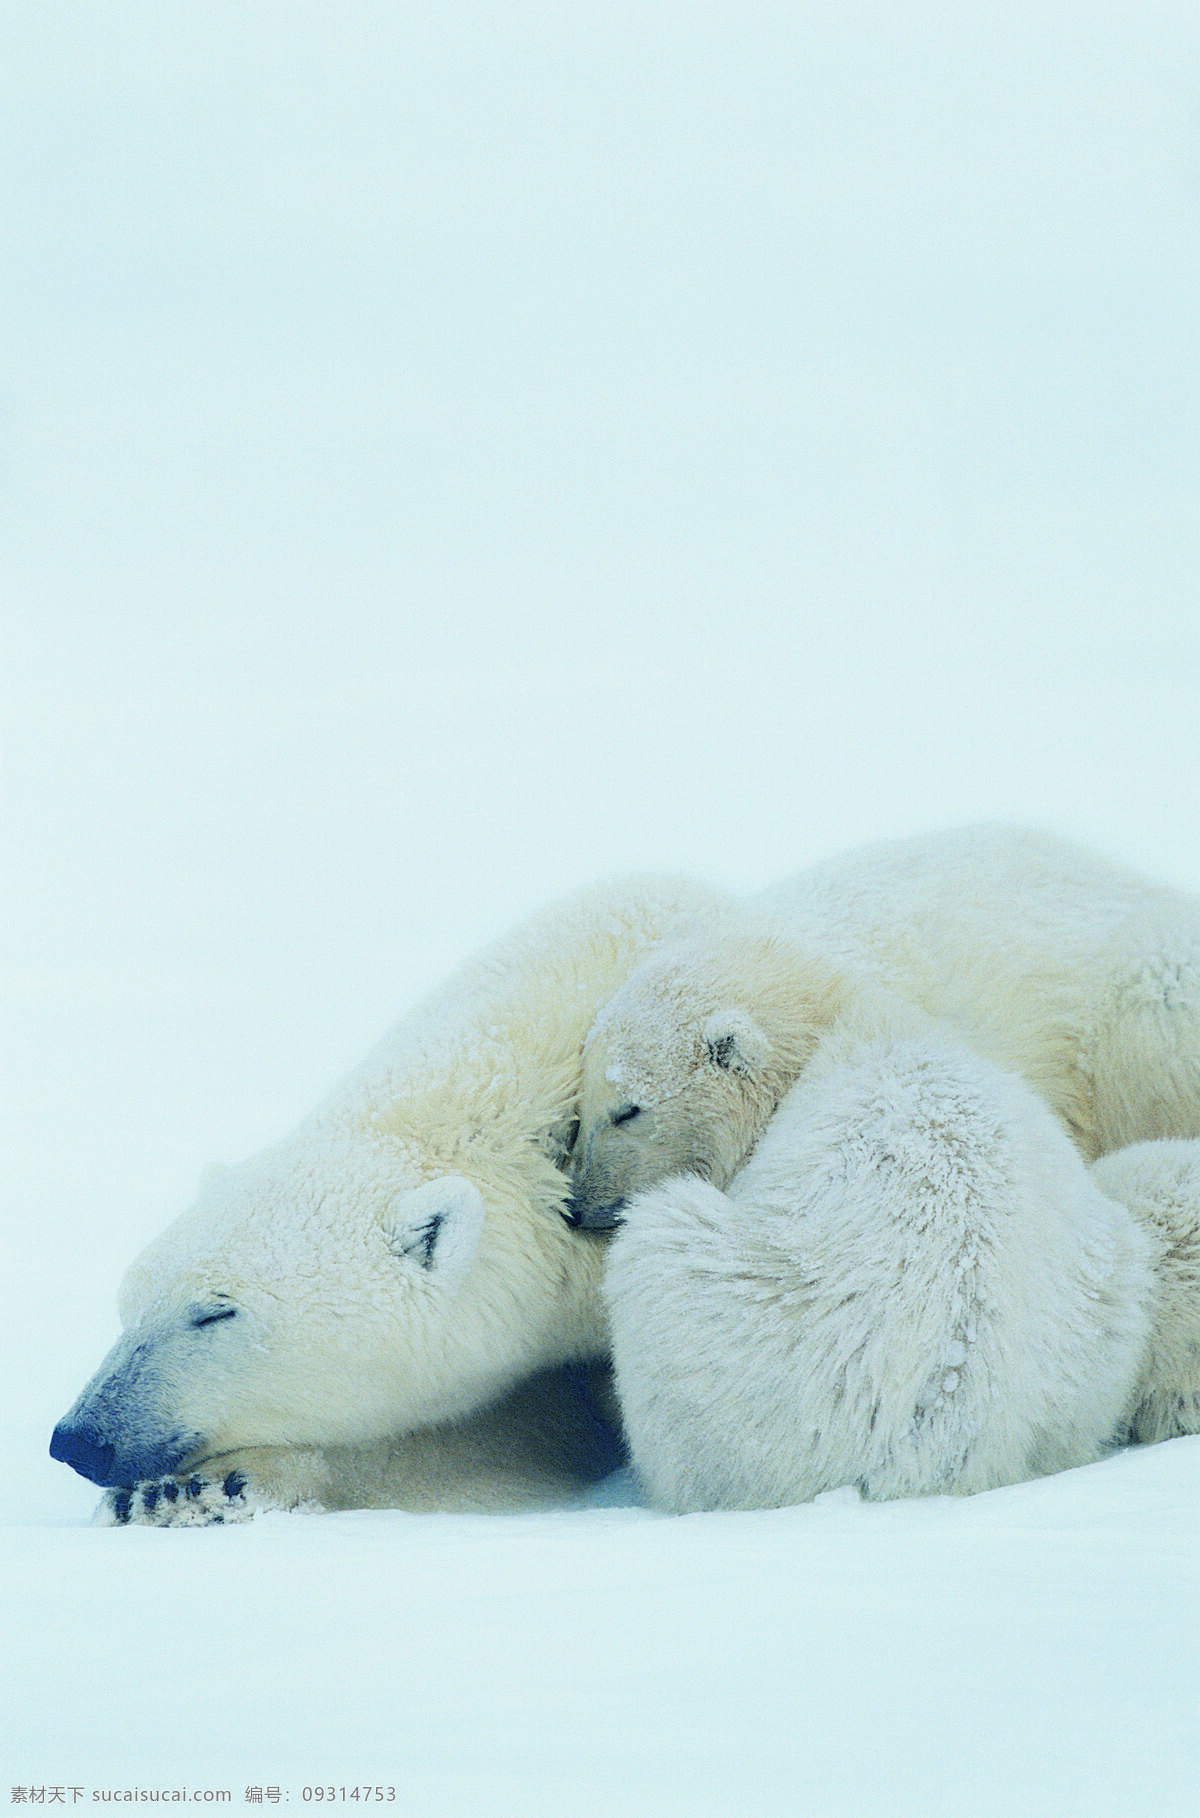 睡觉 北极熊 动物 野生动物 北极 熊 母熊和小熊 雪地 陆地动物 生物世界